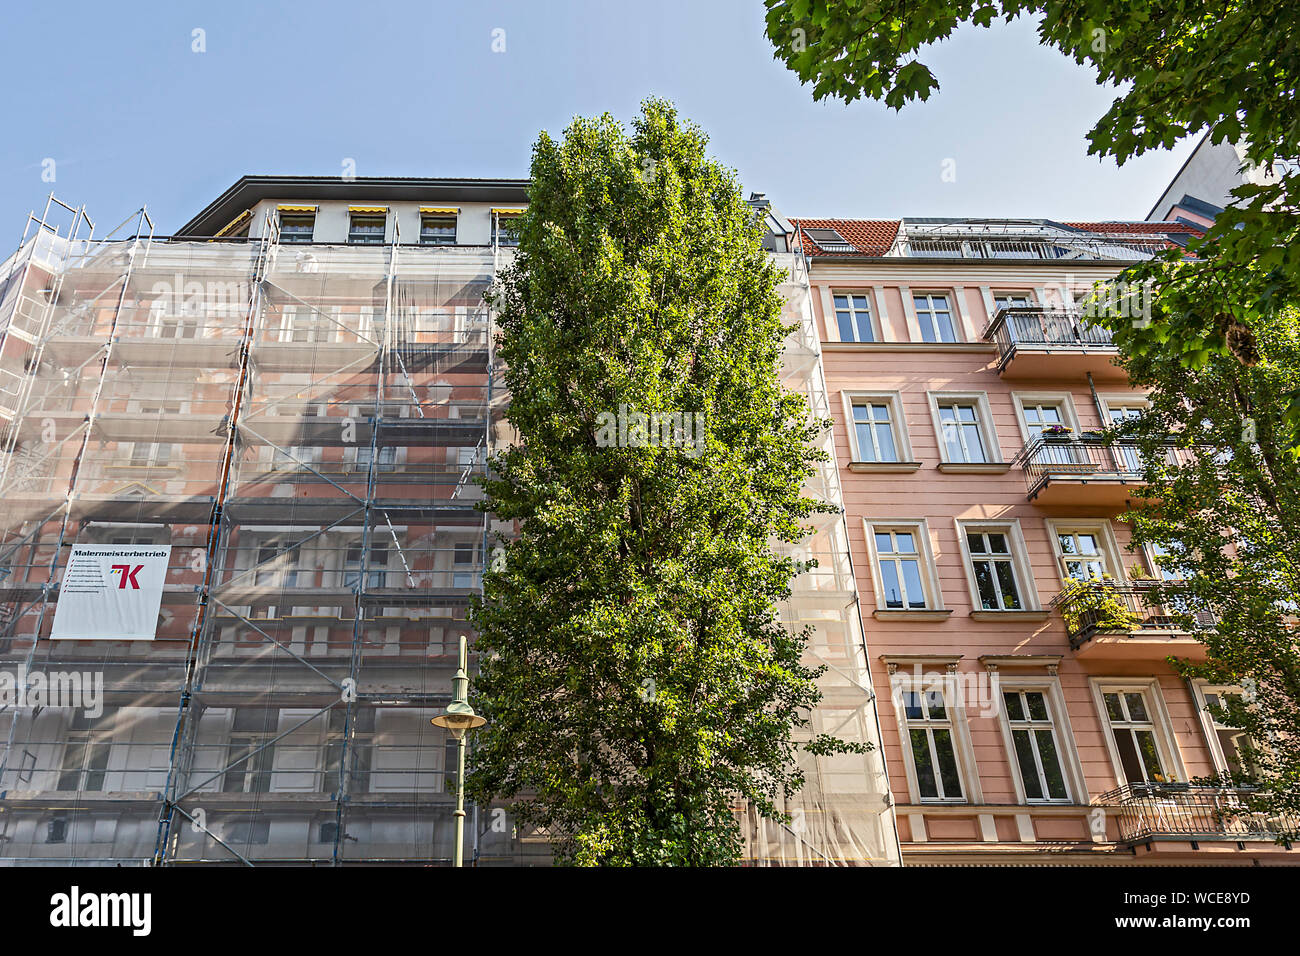 Sanierung eines alten Wohnhauses in Berlin Prenzlauer Berg, Berlin, Deutschland Stockfoto